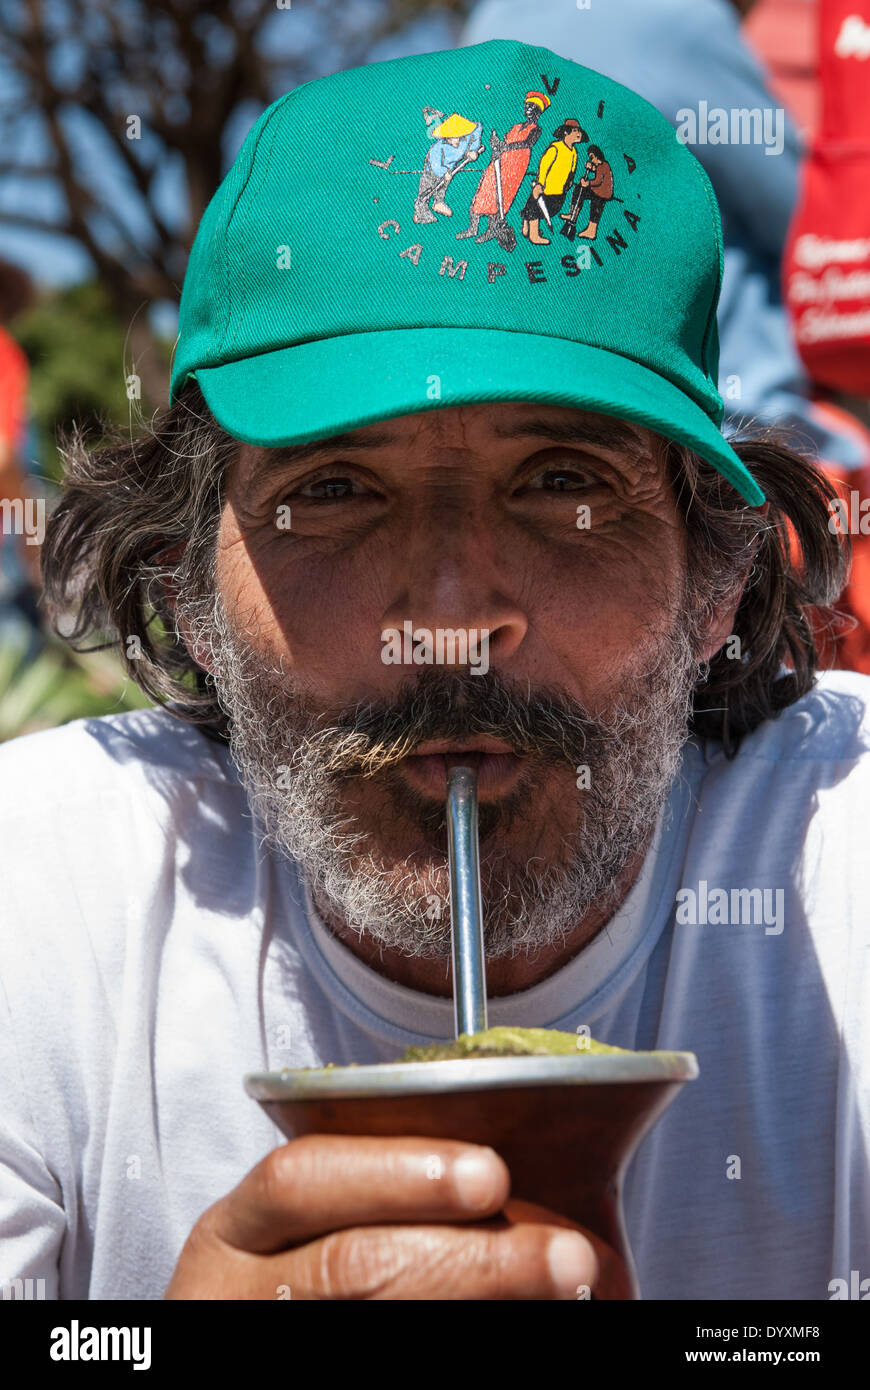 Brasilia, Brasilien. Bärtige Demonstrator von Via Campesina Bewegung mit einer Via Campesina Baseball-Kappe aus einem Chimarrao Mate-Tee trinken. Stockfoto